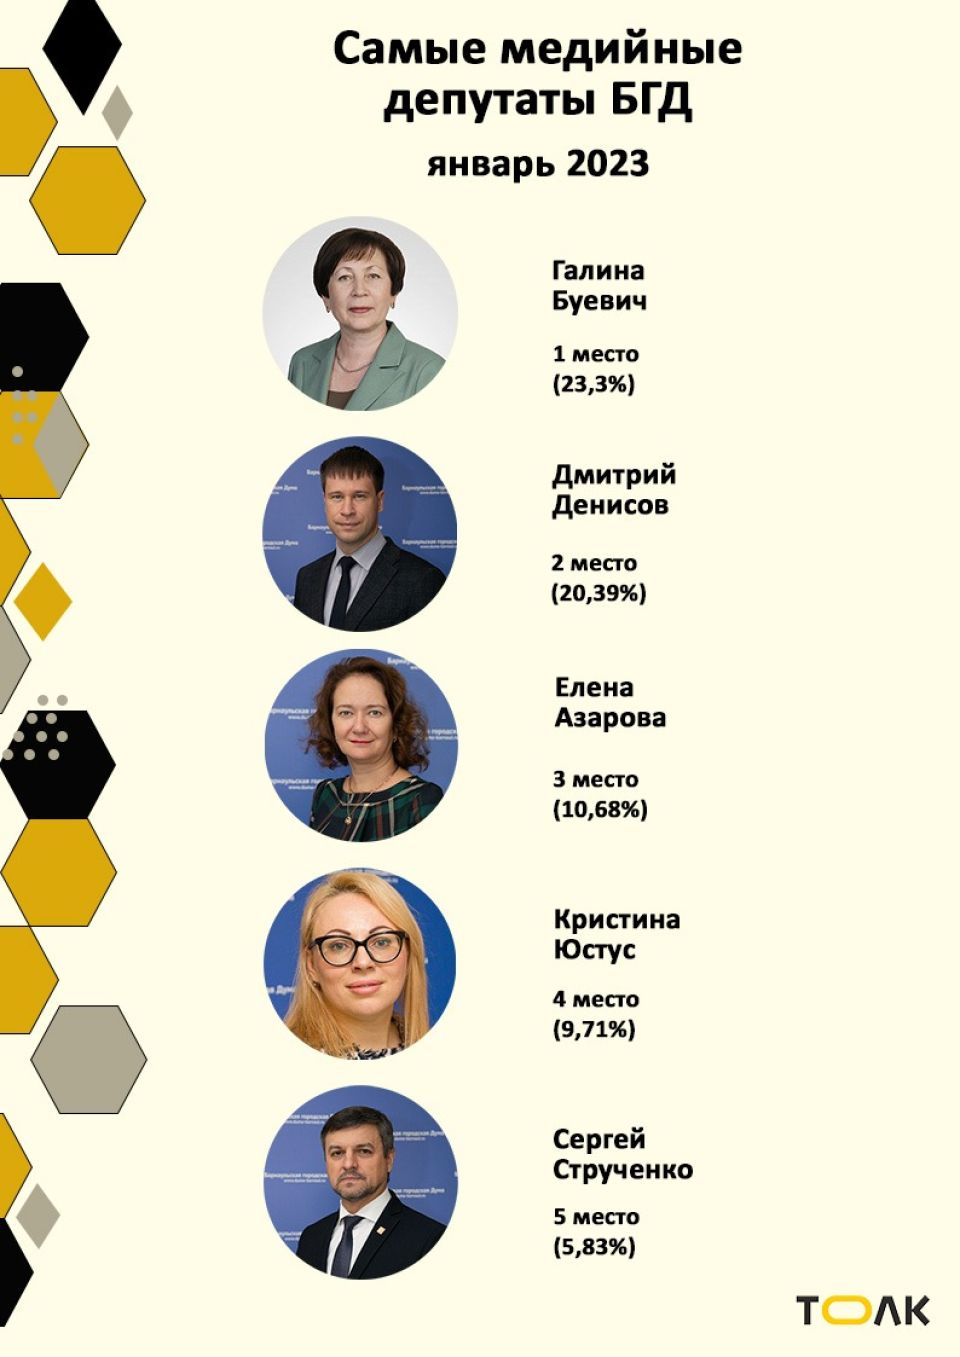 Рейтинг медийности депутатов БГД, январь 2023 года